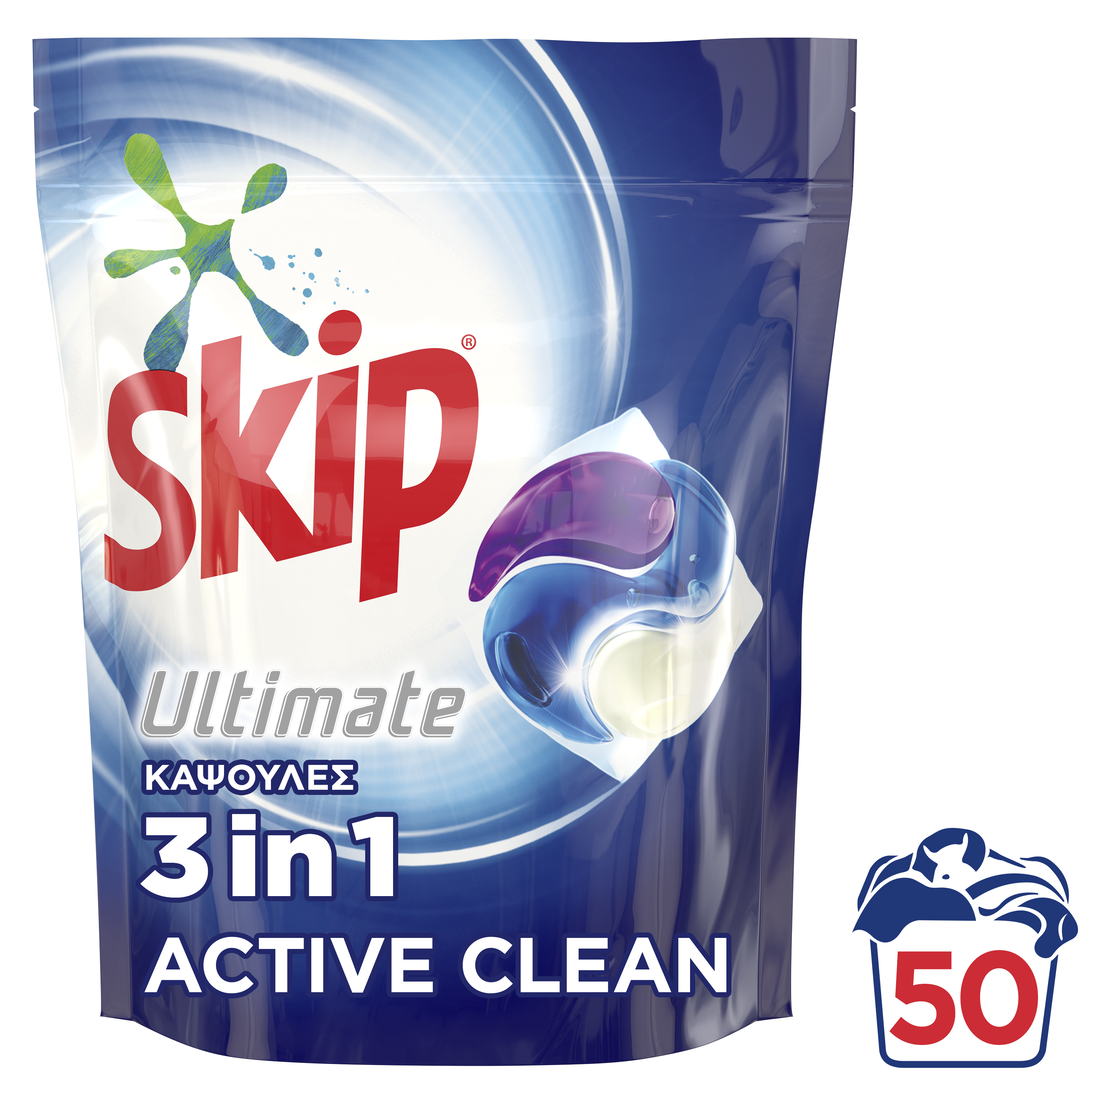 Skip capsule 3 en 1 active clean: Diversey - Voussert